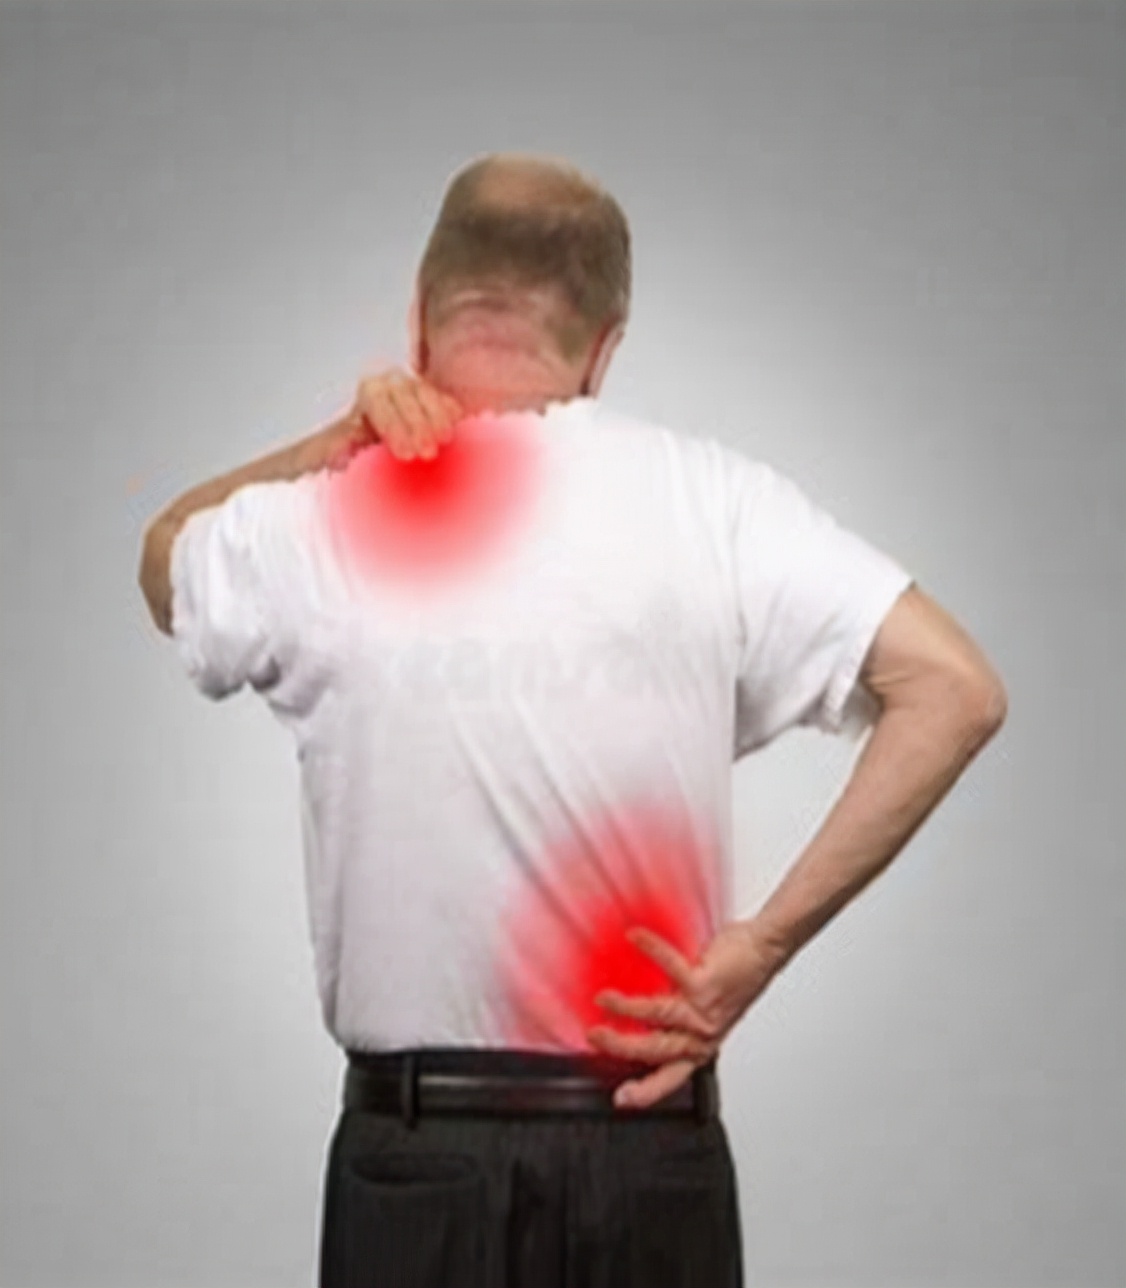 后背,肩胛骨区域疼痛是怎么回事?该如何应对?告诉您